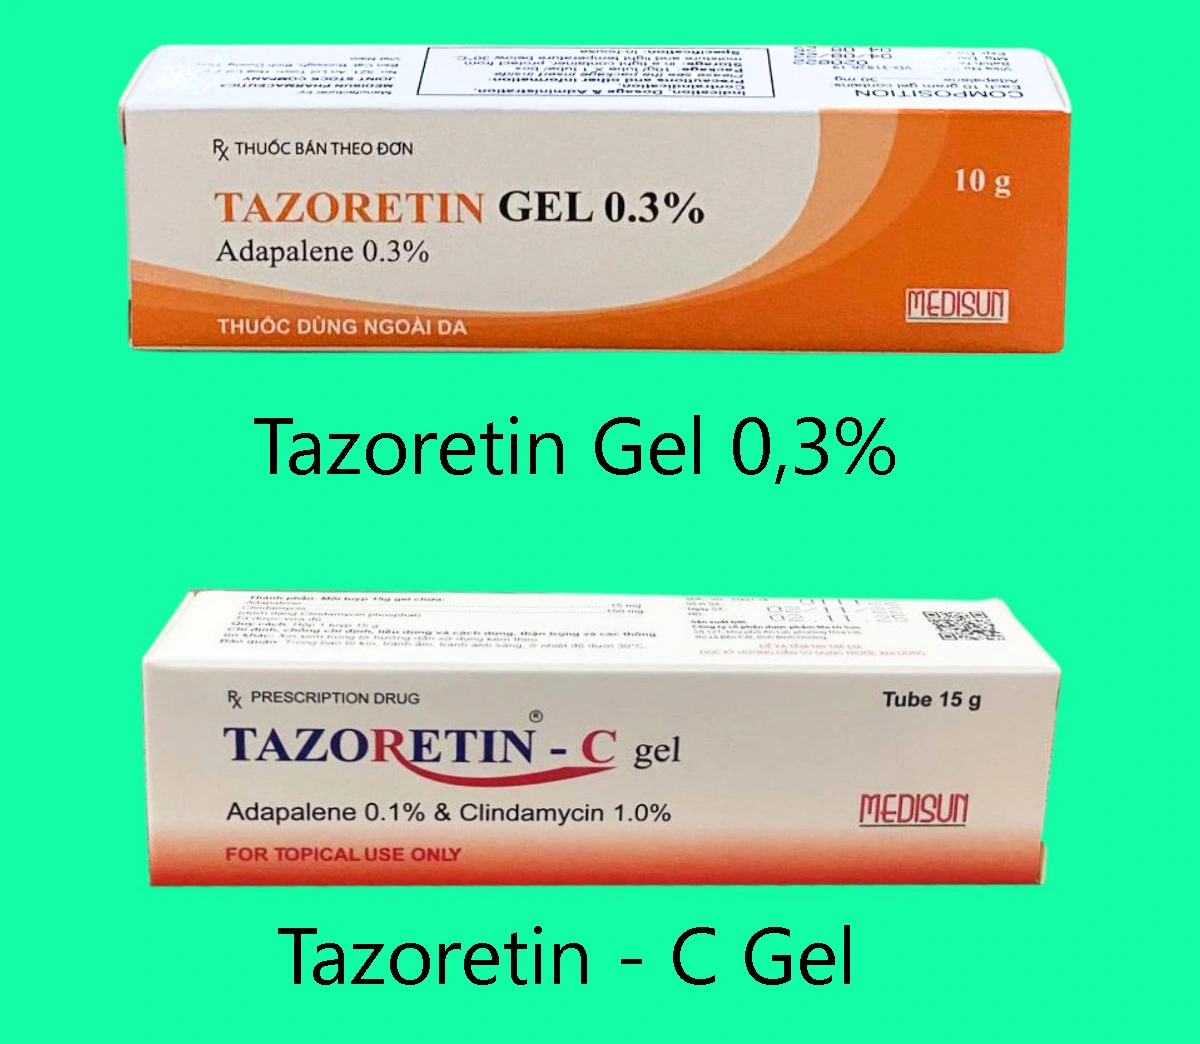 Phân biệt Tazoretin Gel 0,3% và Tazoretin - C Gel 